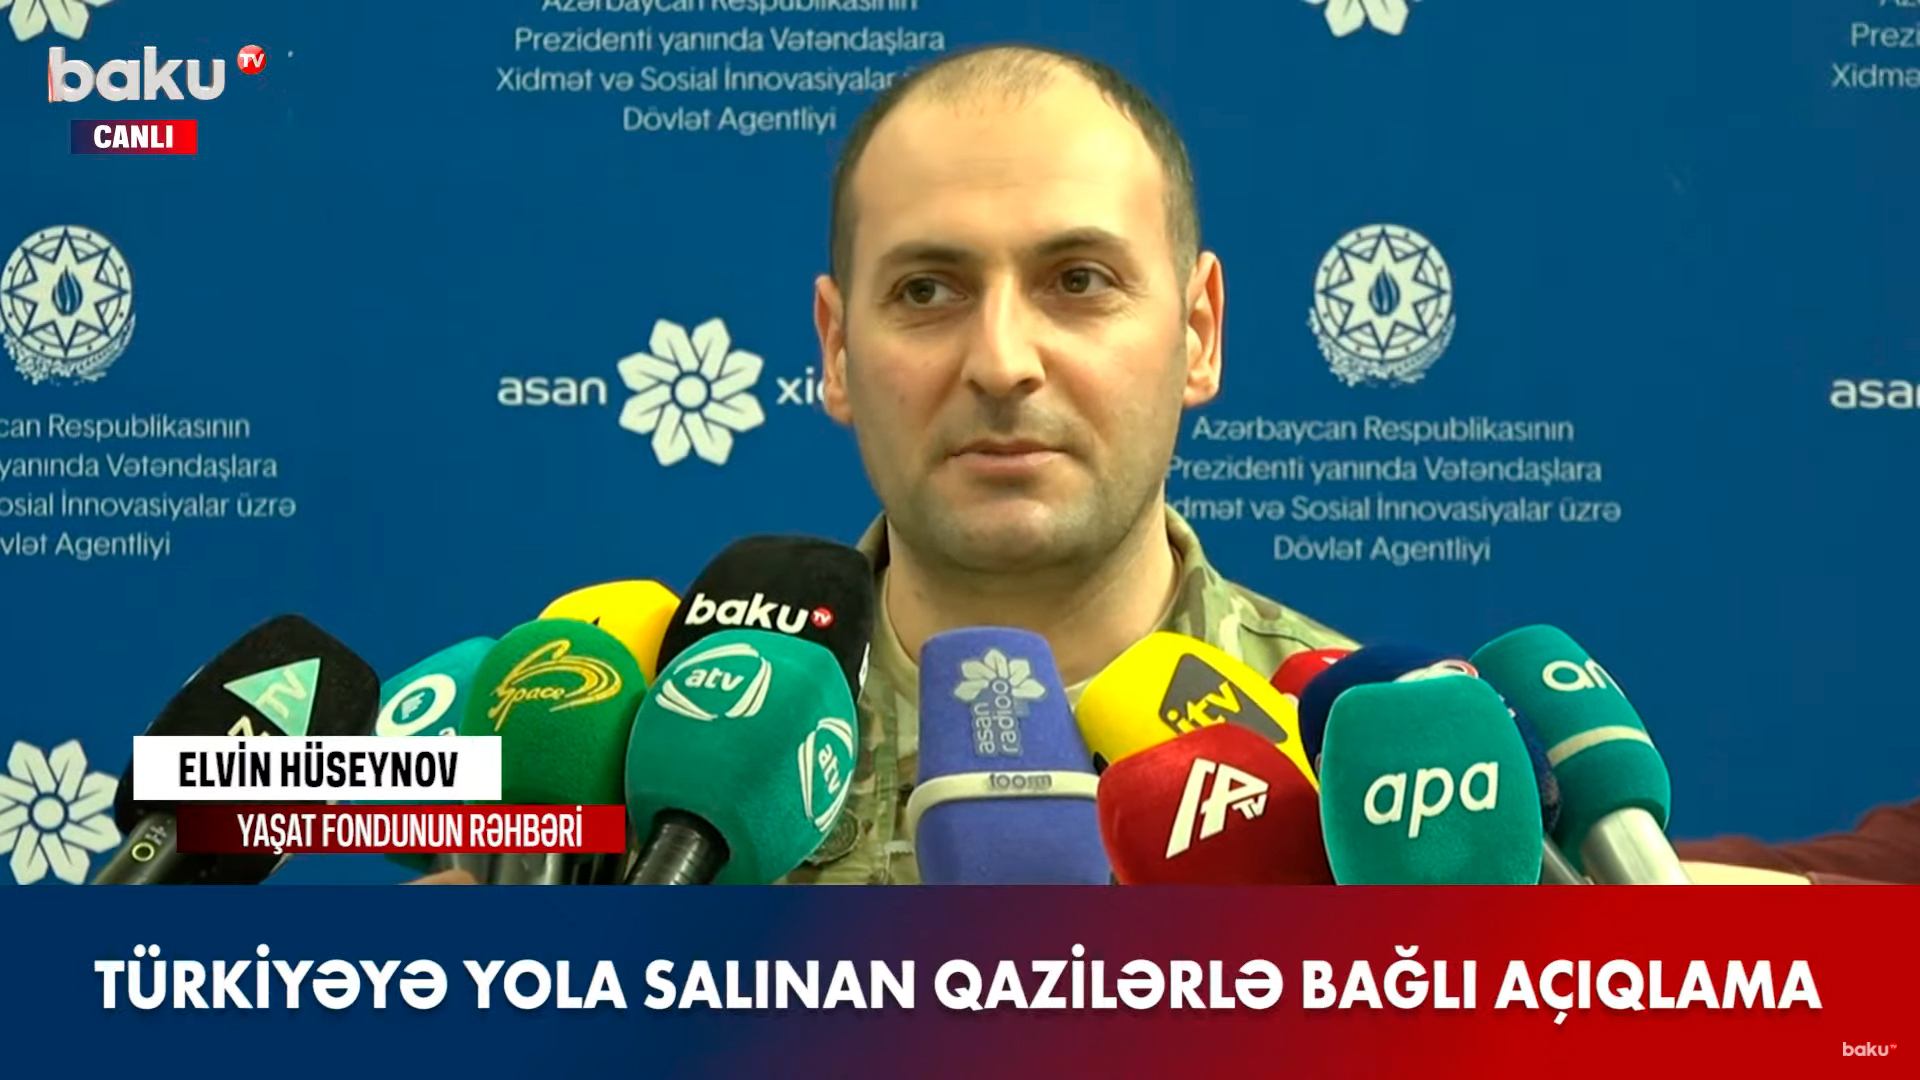 Глава Фонда YAŞAT выступил с заявлением об участниках войны, отправленных на лечение в Турцию - ВИДЕО